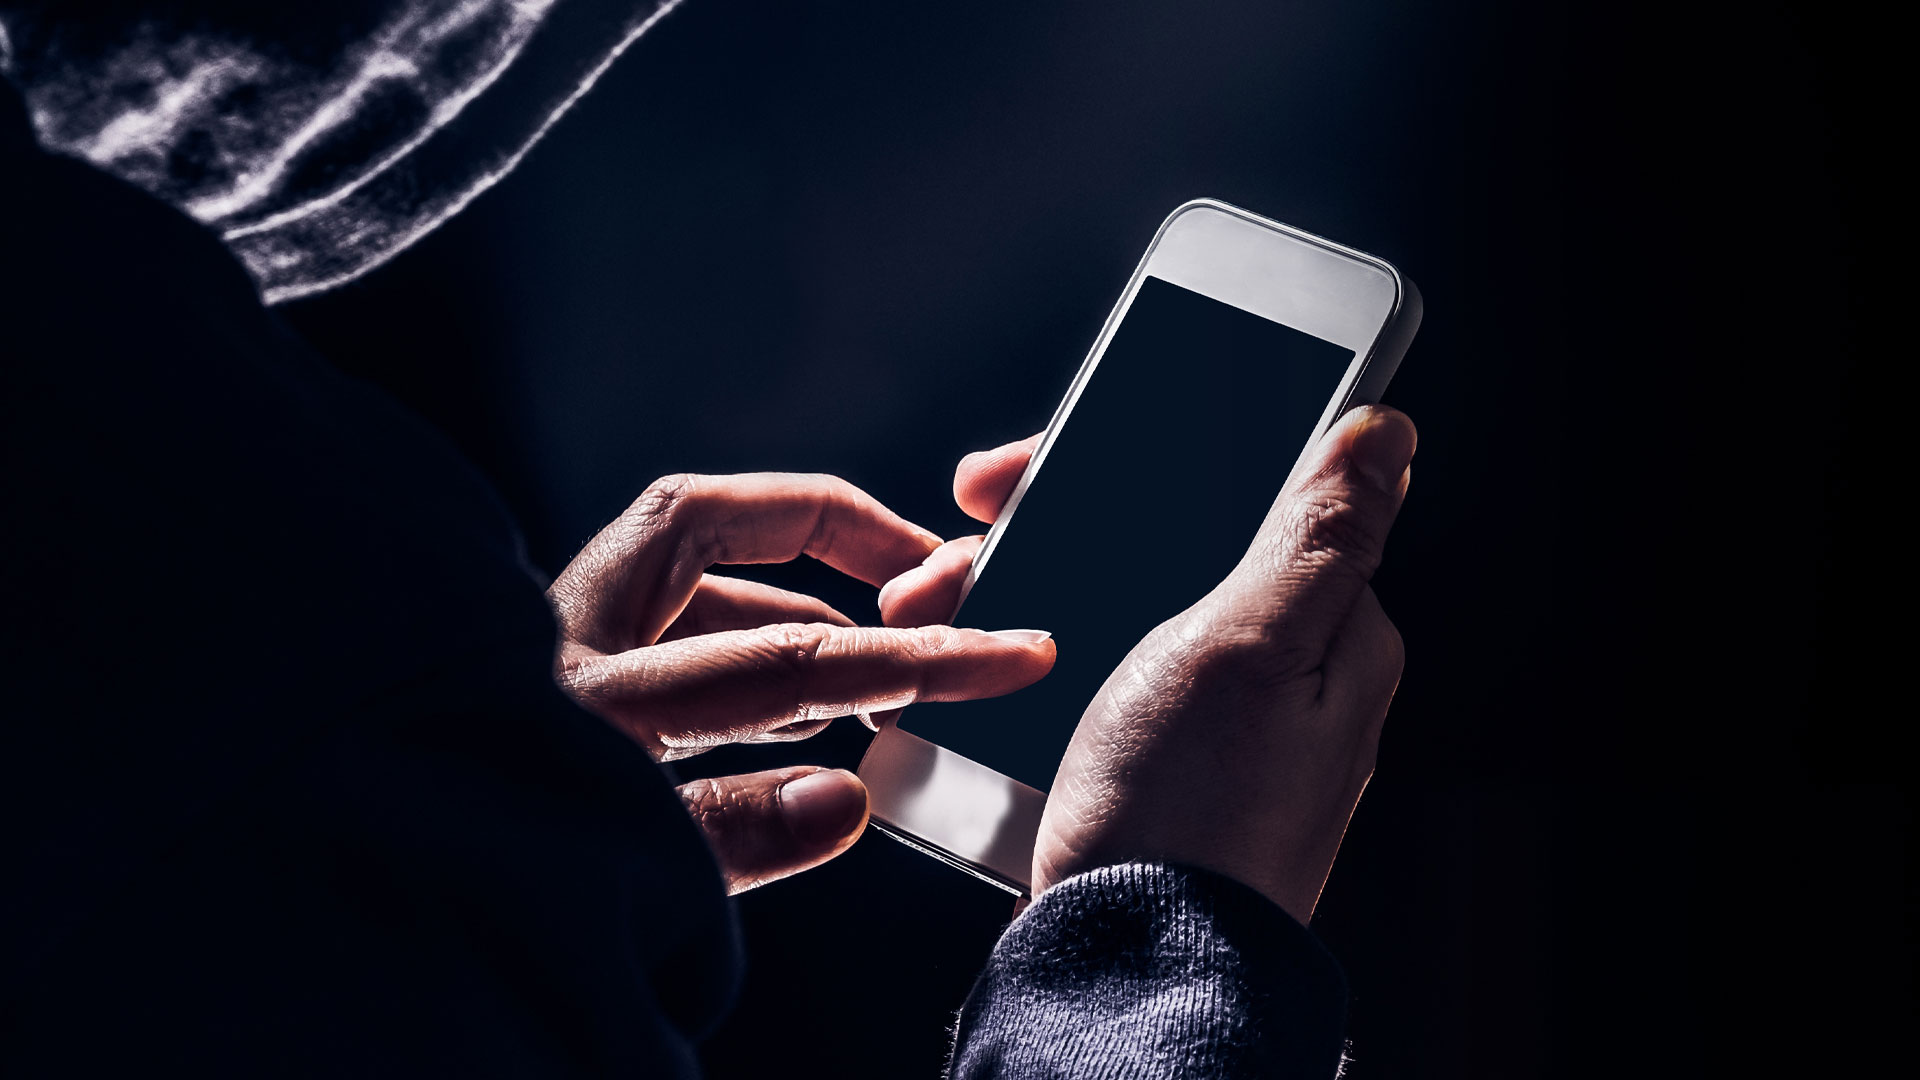 Condenaron a un hombre por maltrato y violación de privacidad tras revisar el celular de su pareja (Foto: Shutterstock)